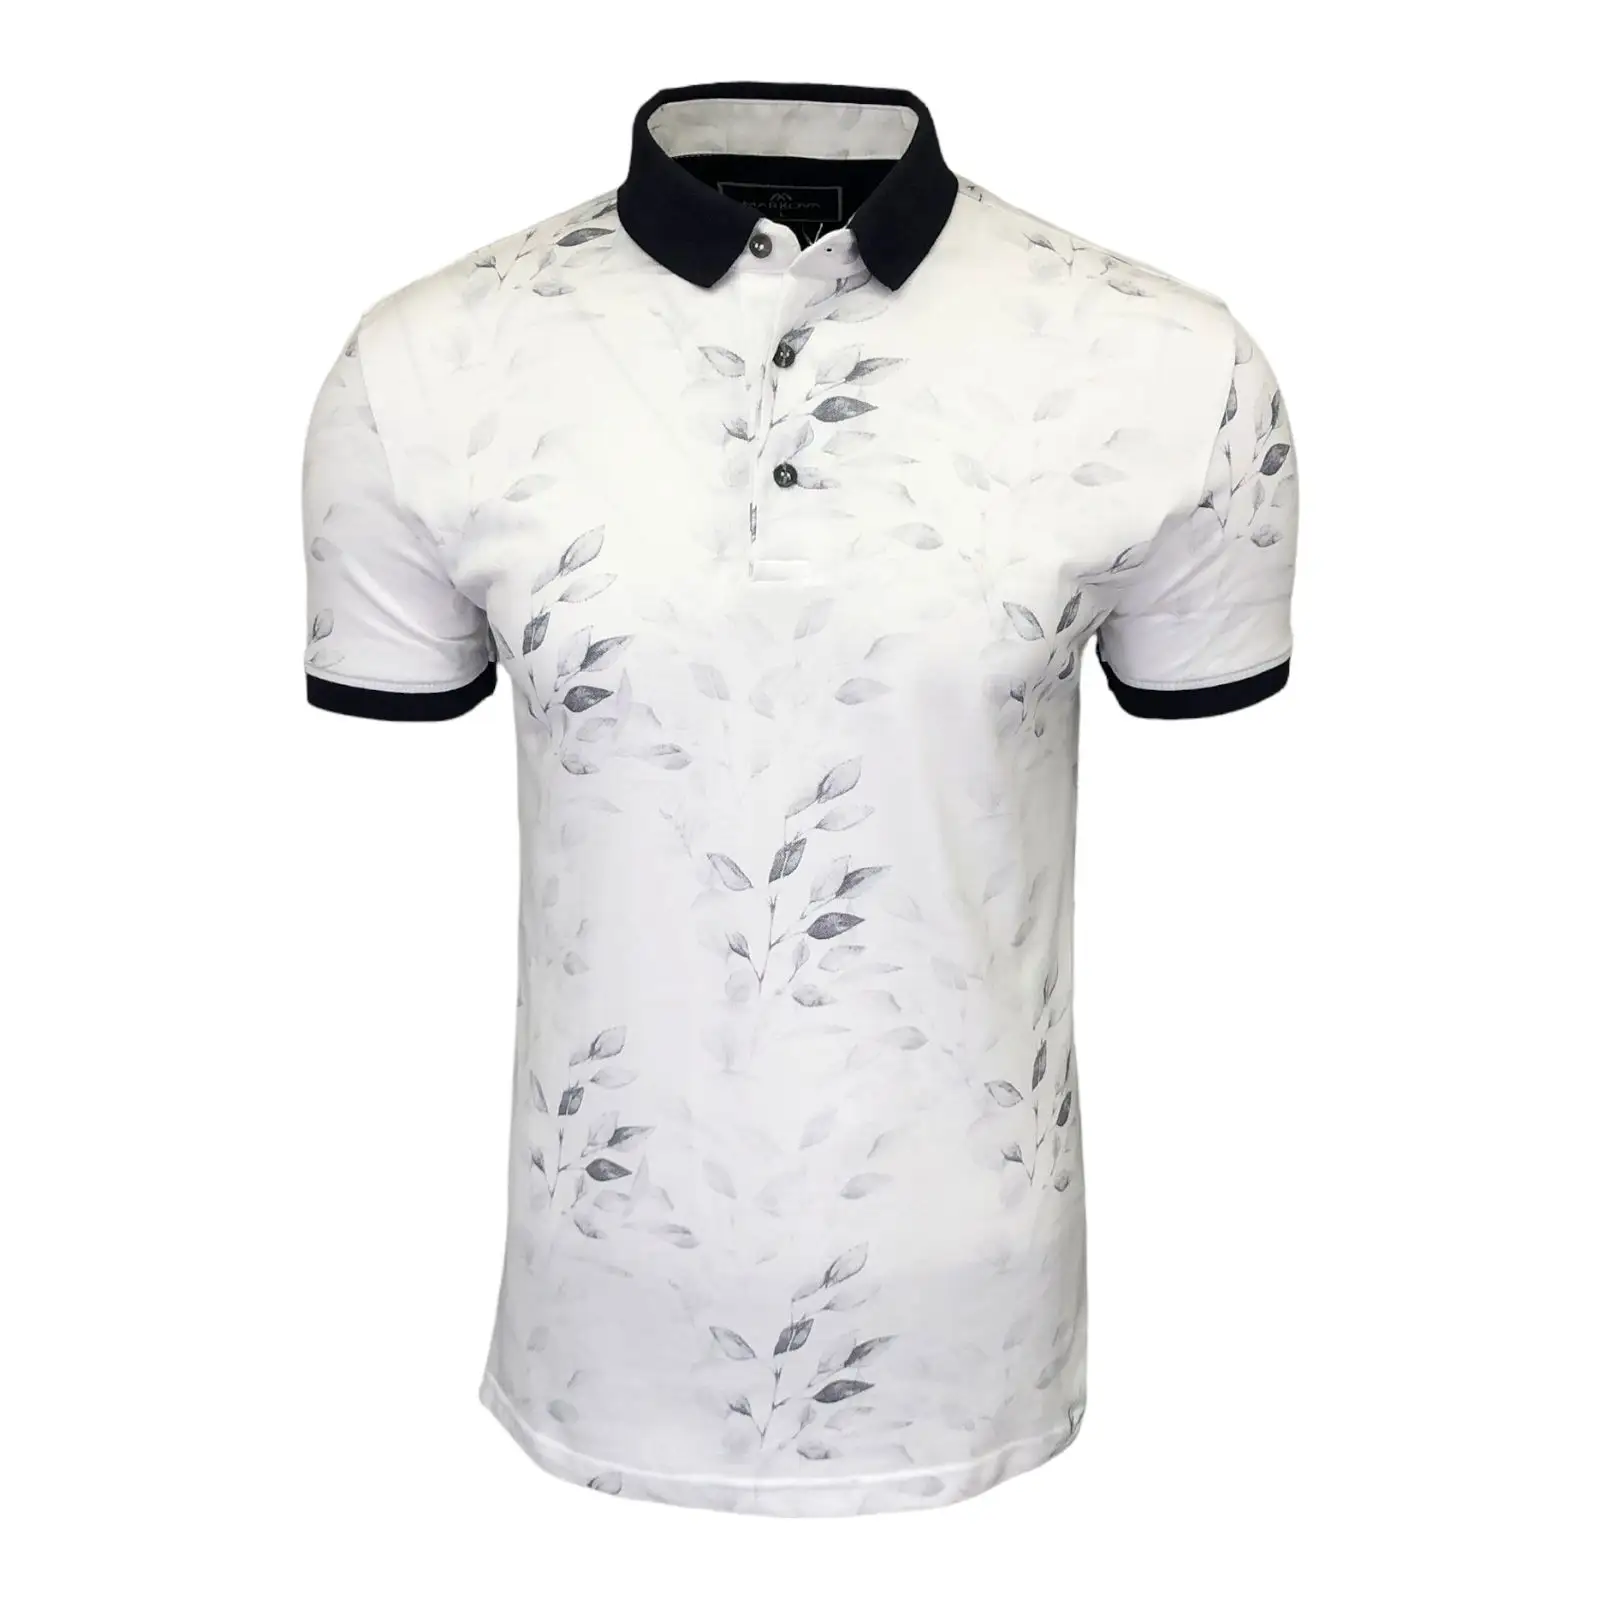 % 100 cotone tessuto nuova stagione all'ingrosso t-Shirt da uomo di alta qualità nero bianco fiore manica corta Polo